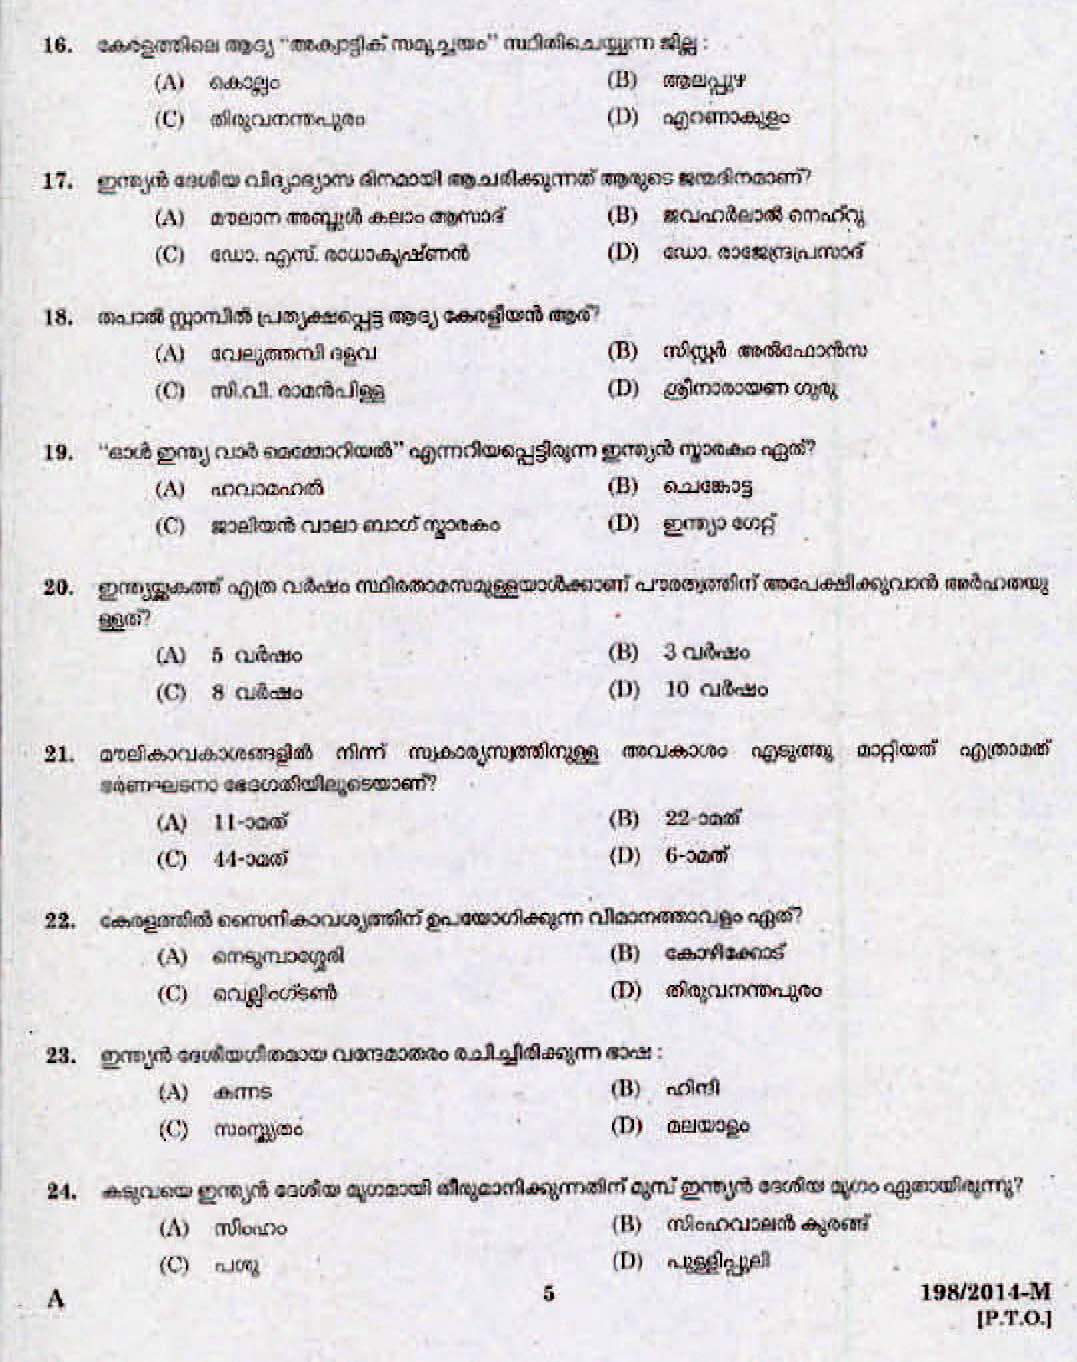 Kerala Last Grade Servants Exam 2014 Question Paper Code 1982014 M 3